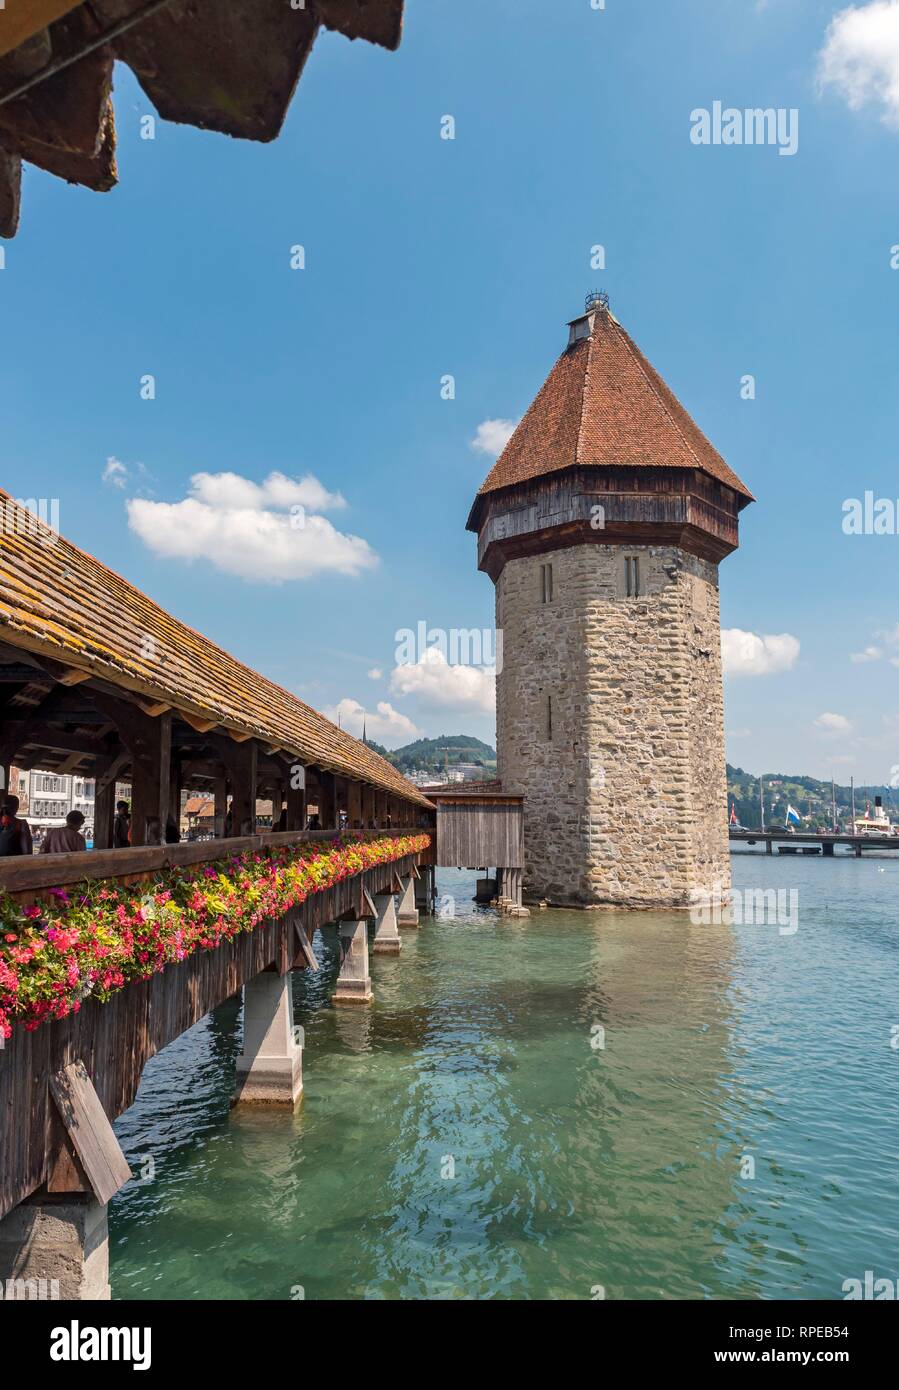 Hölzerne Kapelle Brücke, Kapellbrucke, mit Wasserturm, Wasserturm, Luzern, Luzern, Schweiz Stockfoto